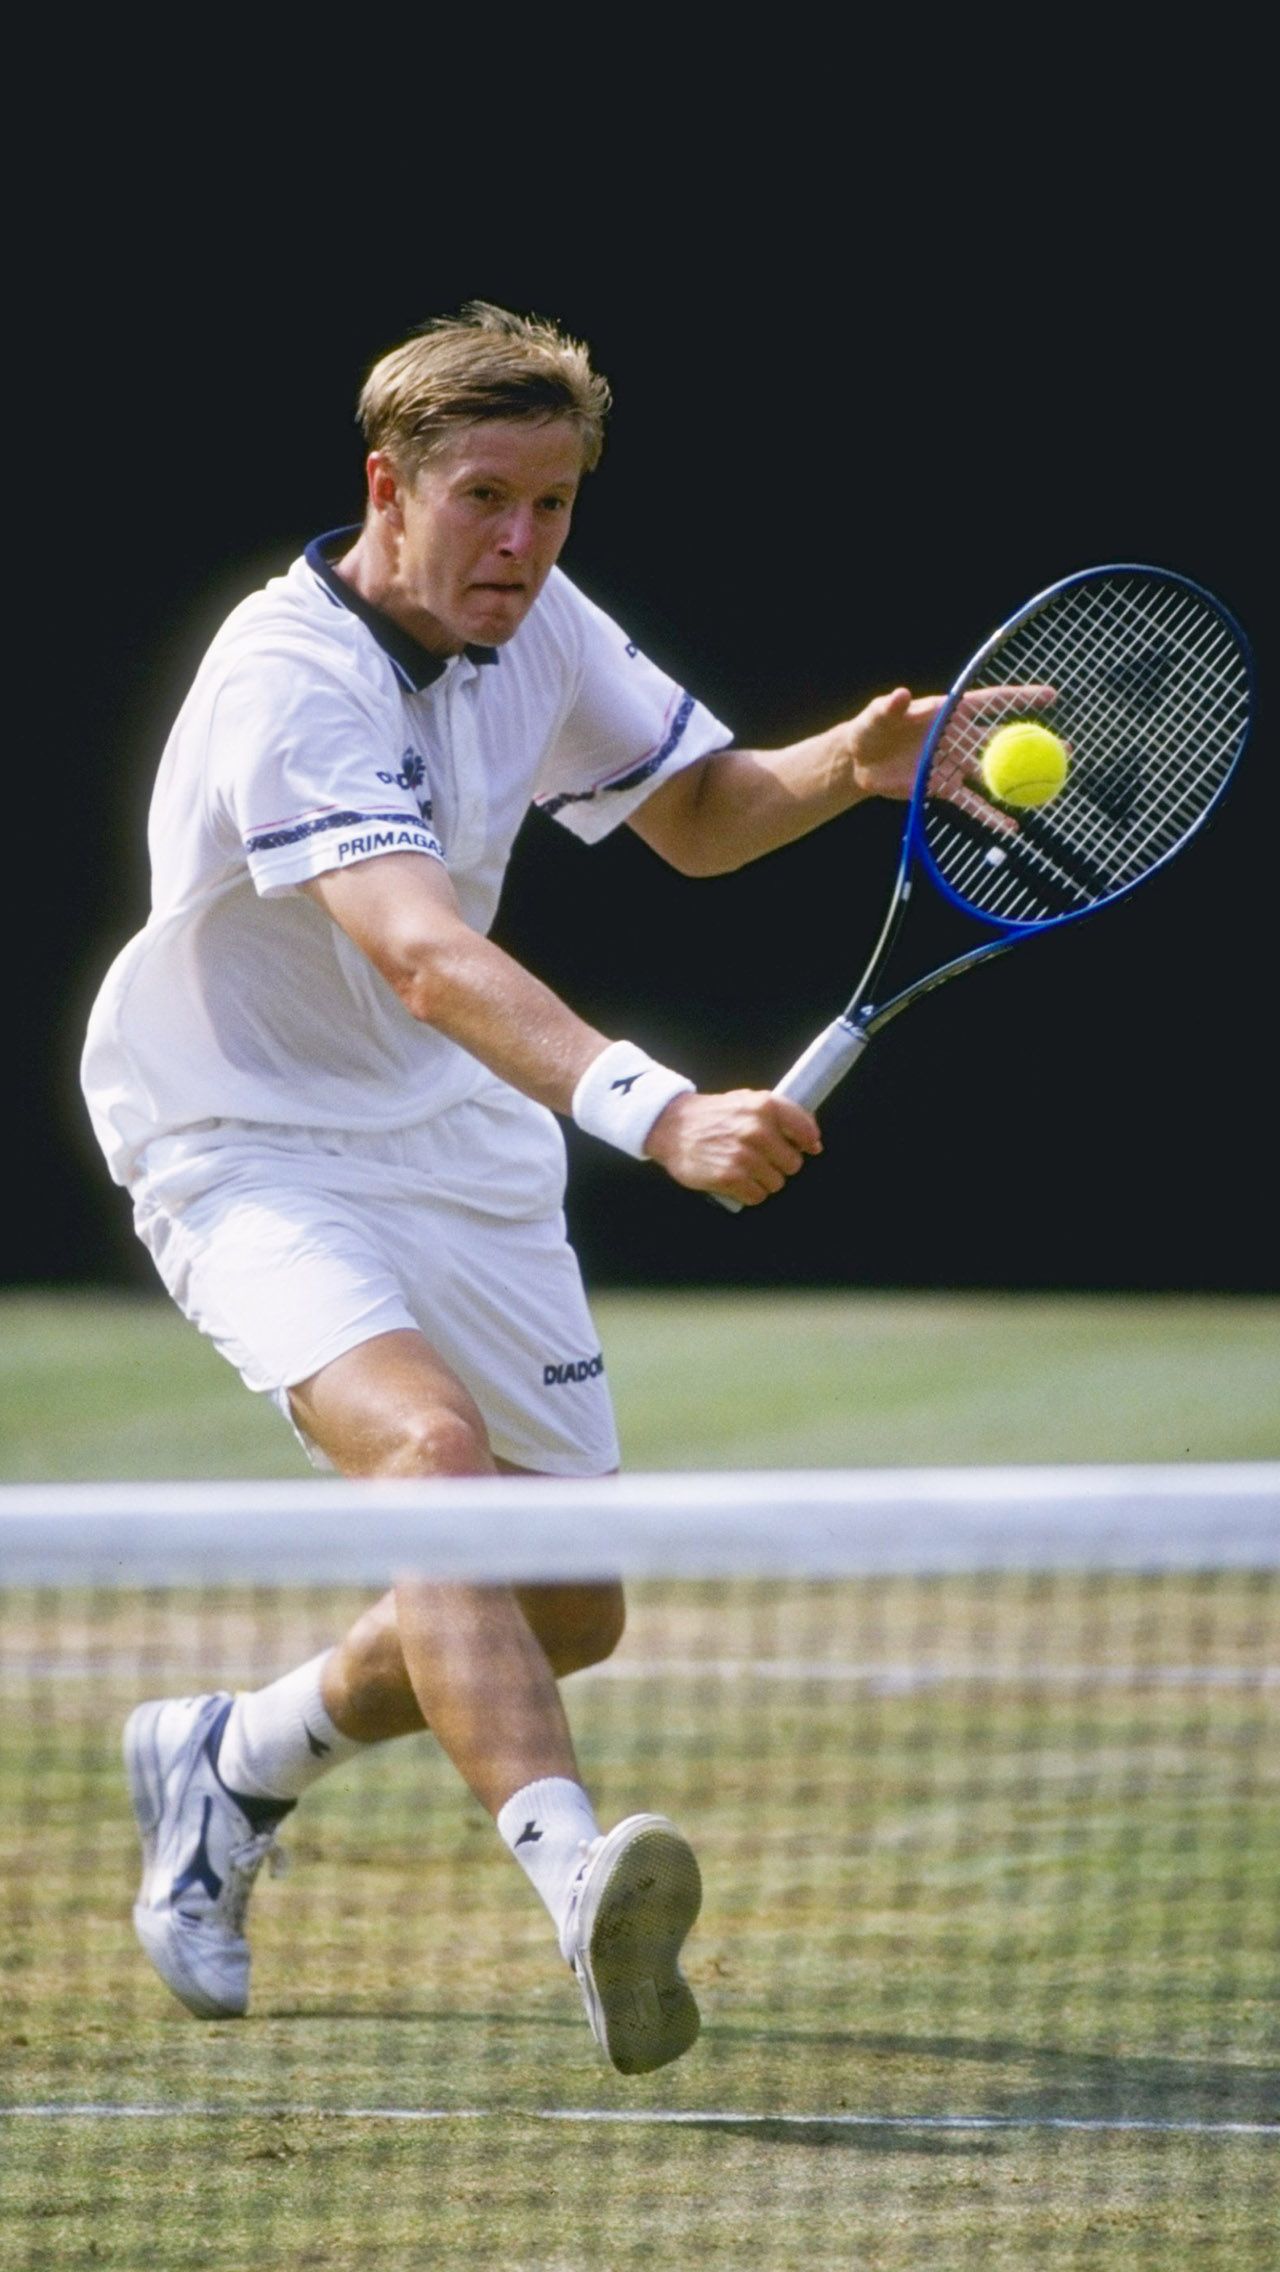 Евгений Кафельников, лучший российский теннисист 90-х, был успешен не только в одиночном разряде, но и в парном. В частности, он семь раз выигрывал «Мастерсы» в парном разряде.